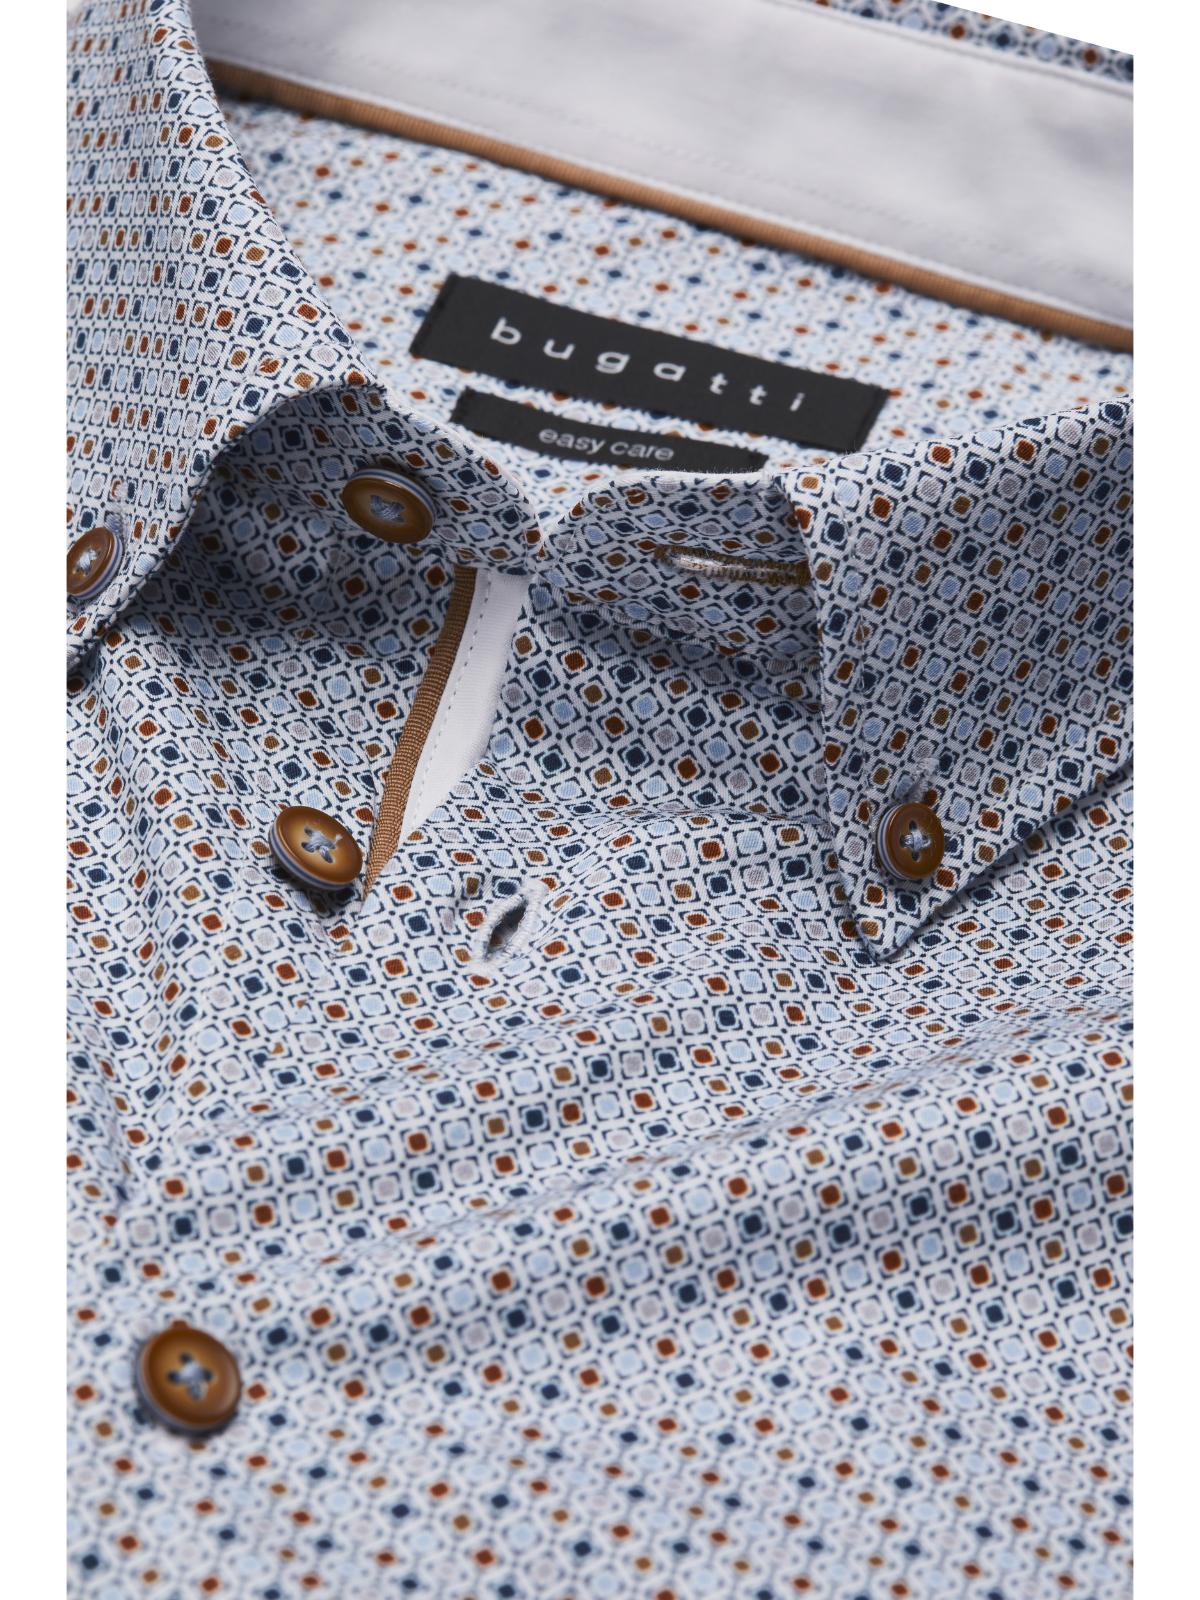 Bugatti Pattern Shirt